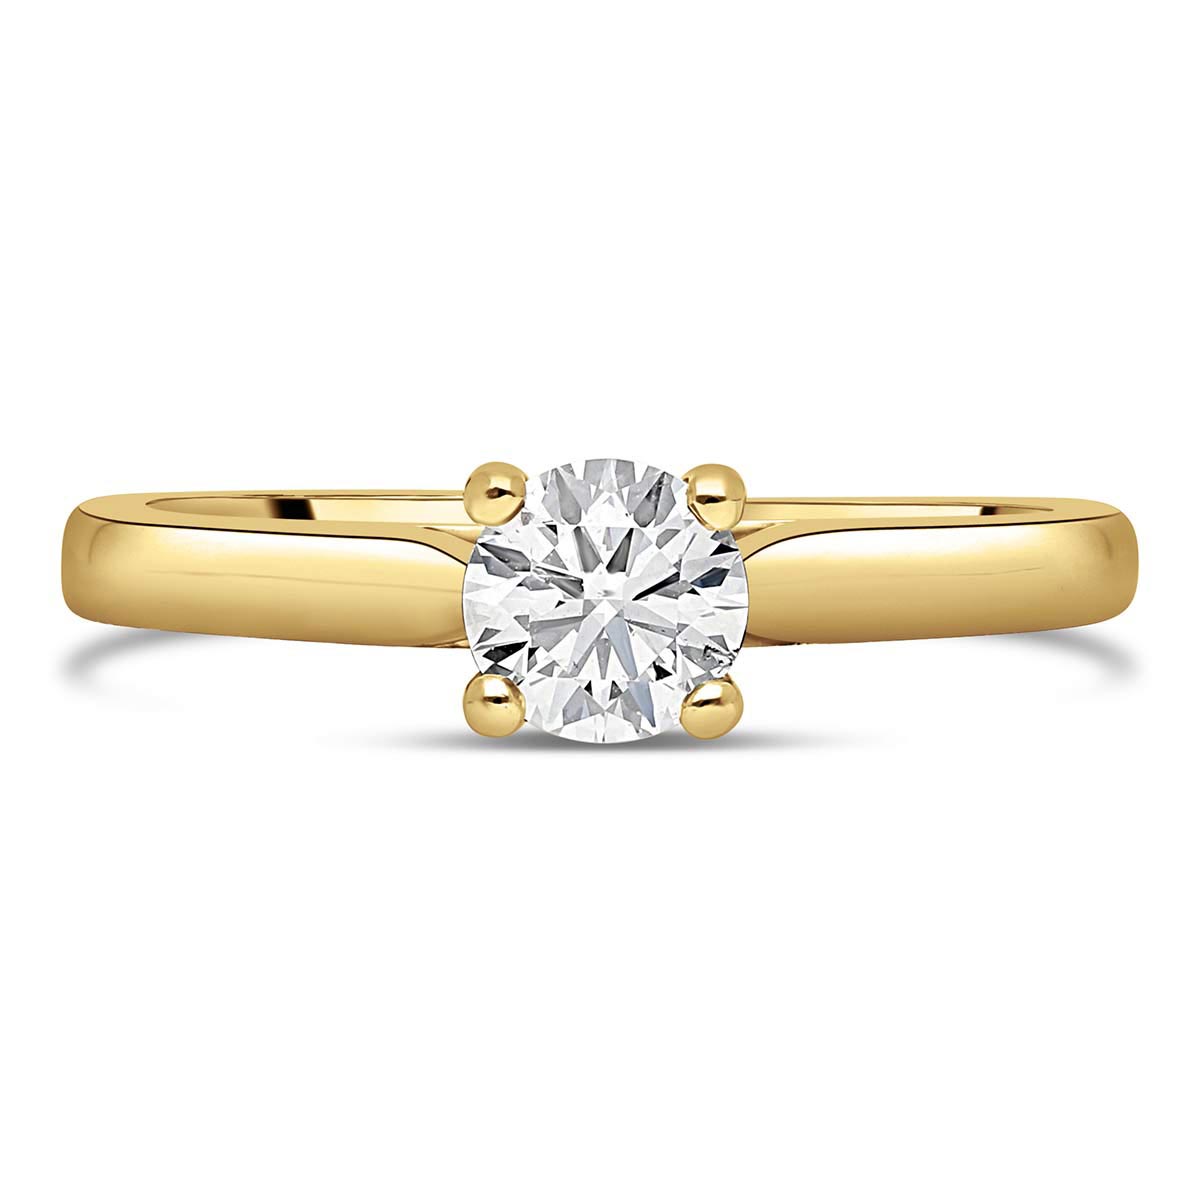 bora-bora-solitaires-diamants-certifies-style-classique-or-jaune-750-